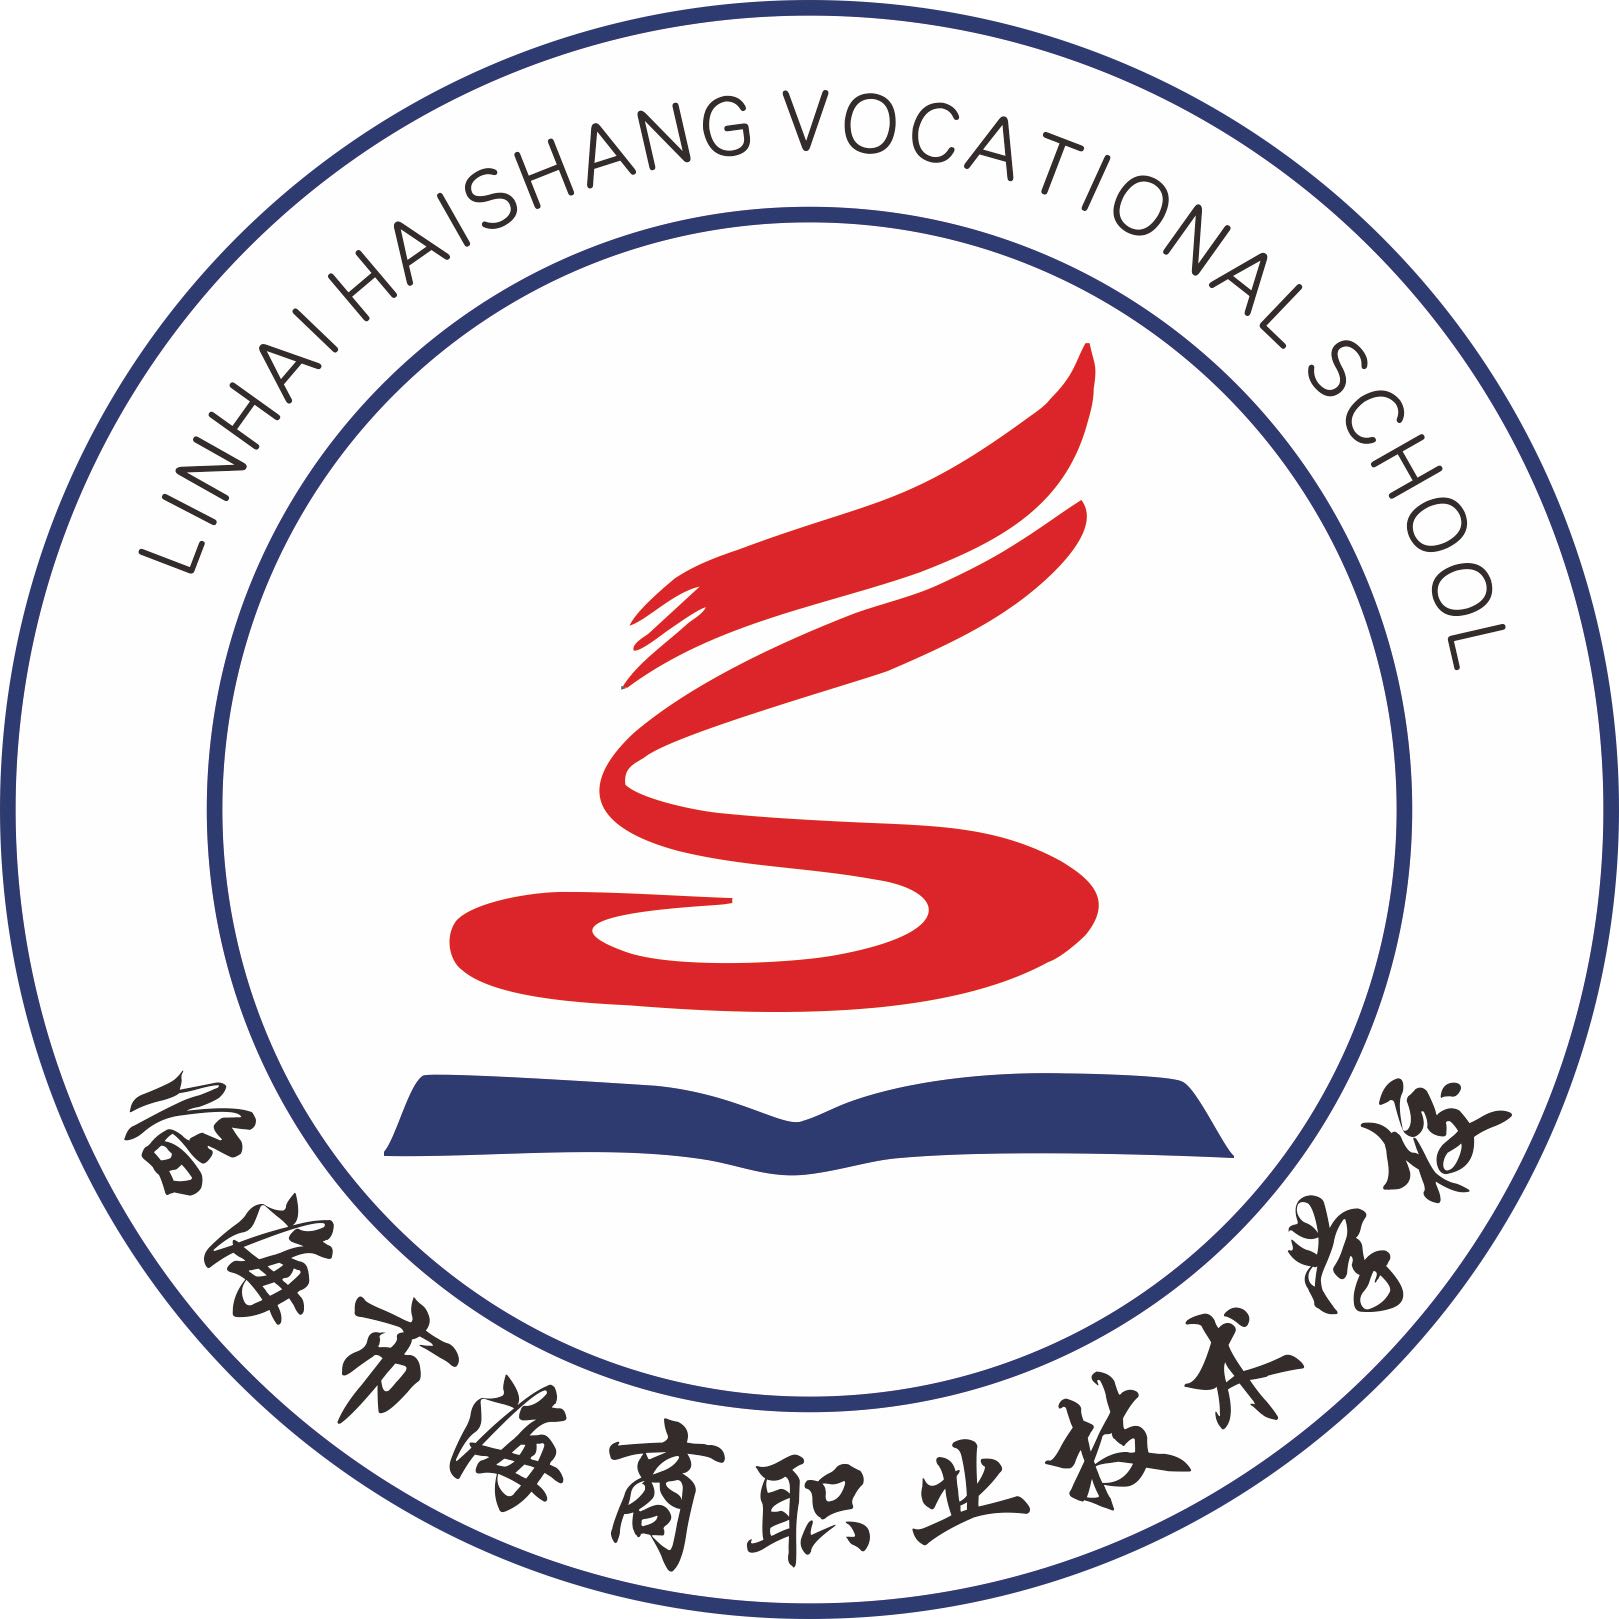 台州职业技术学院校徽图片